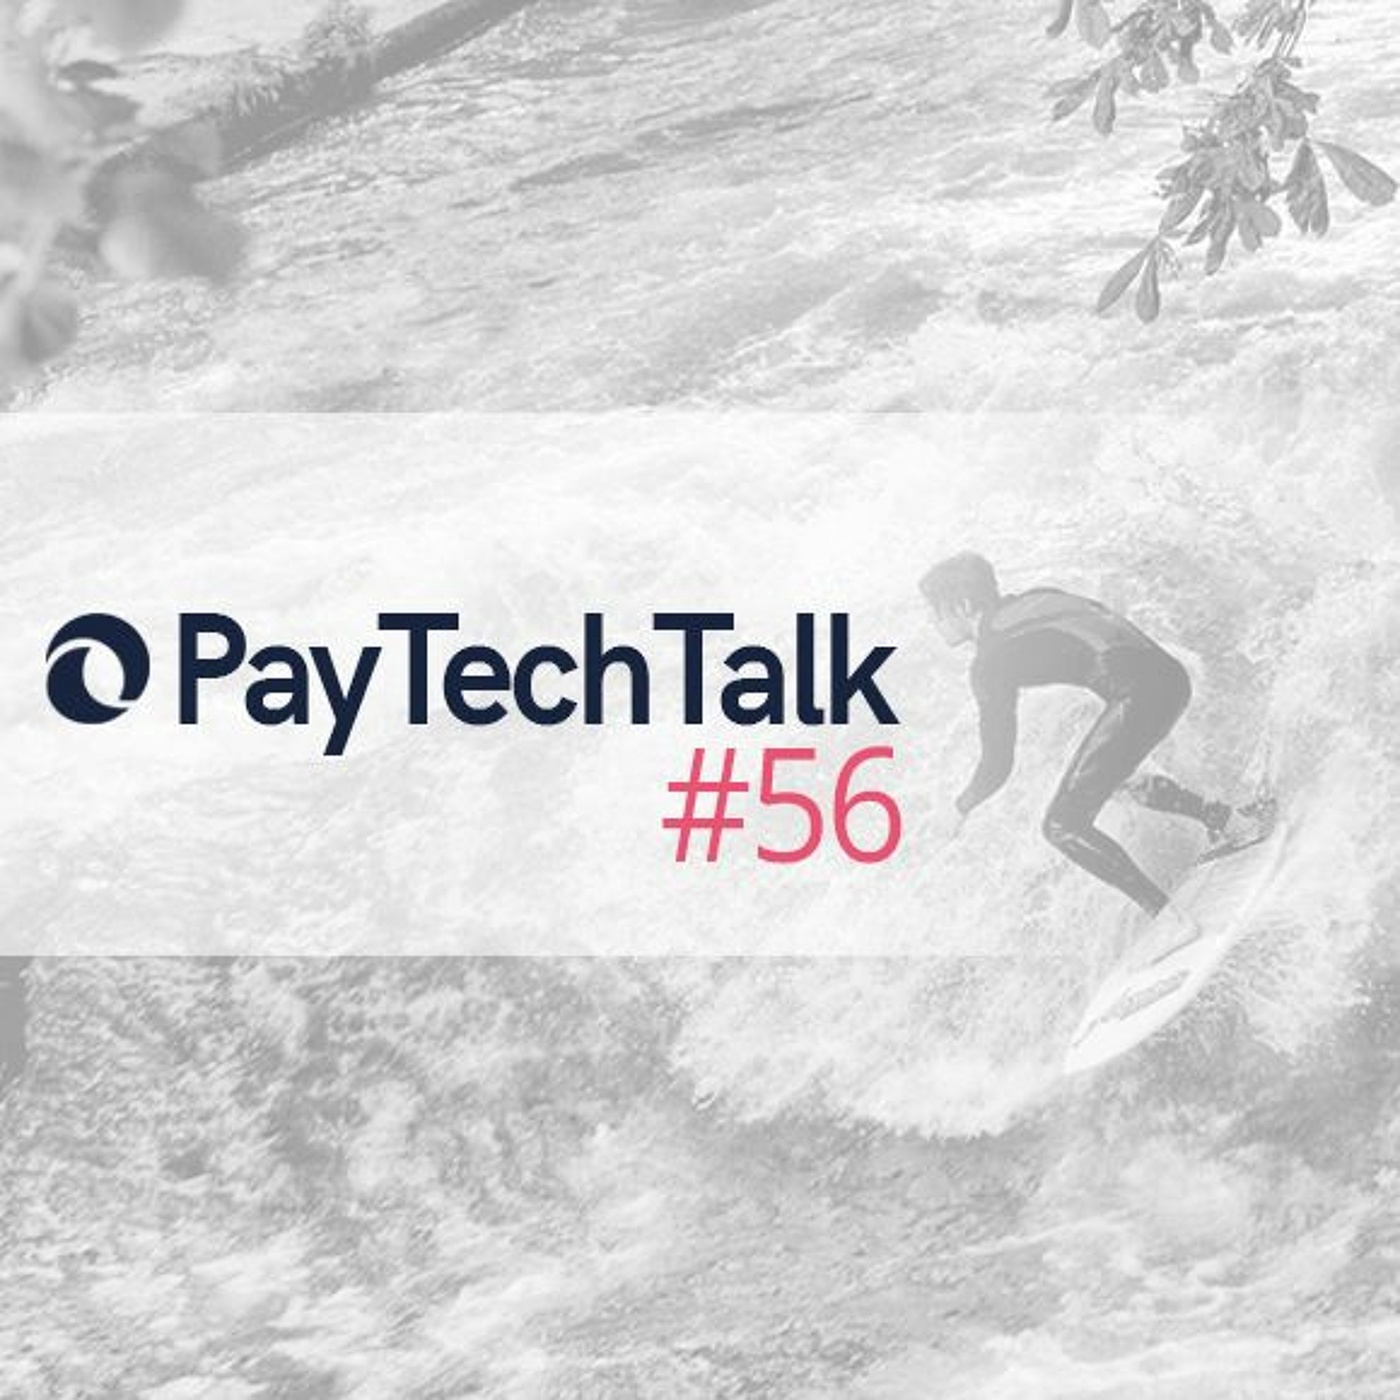 PayTechTalk #56 - Verwahrung von Digitalen Assets